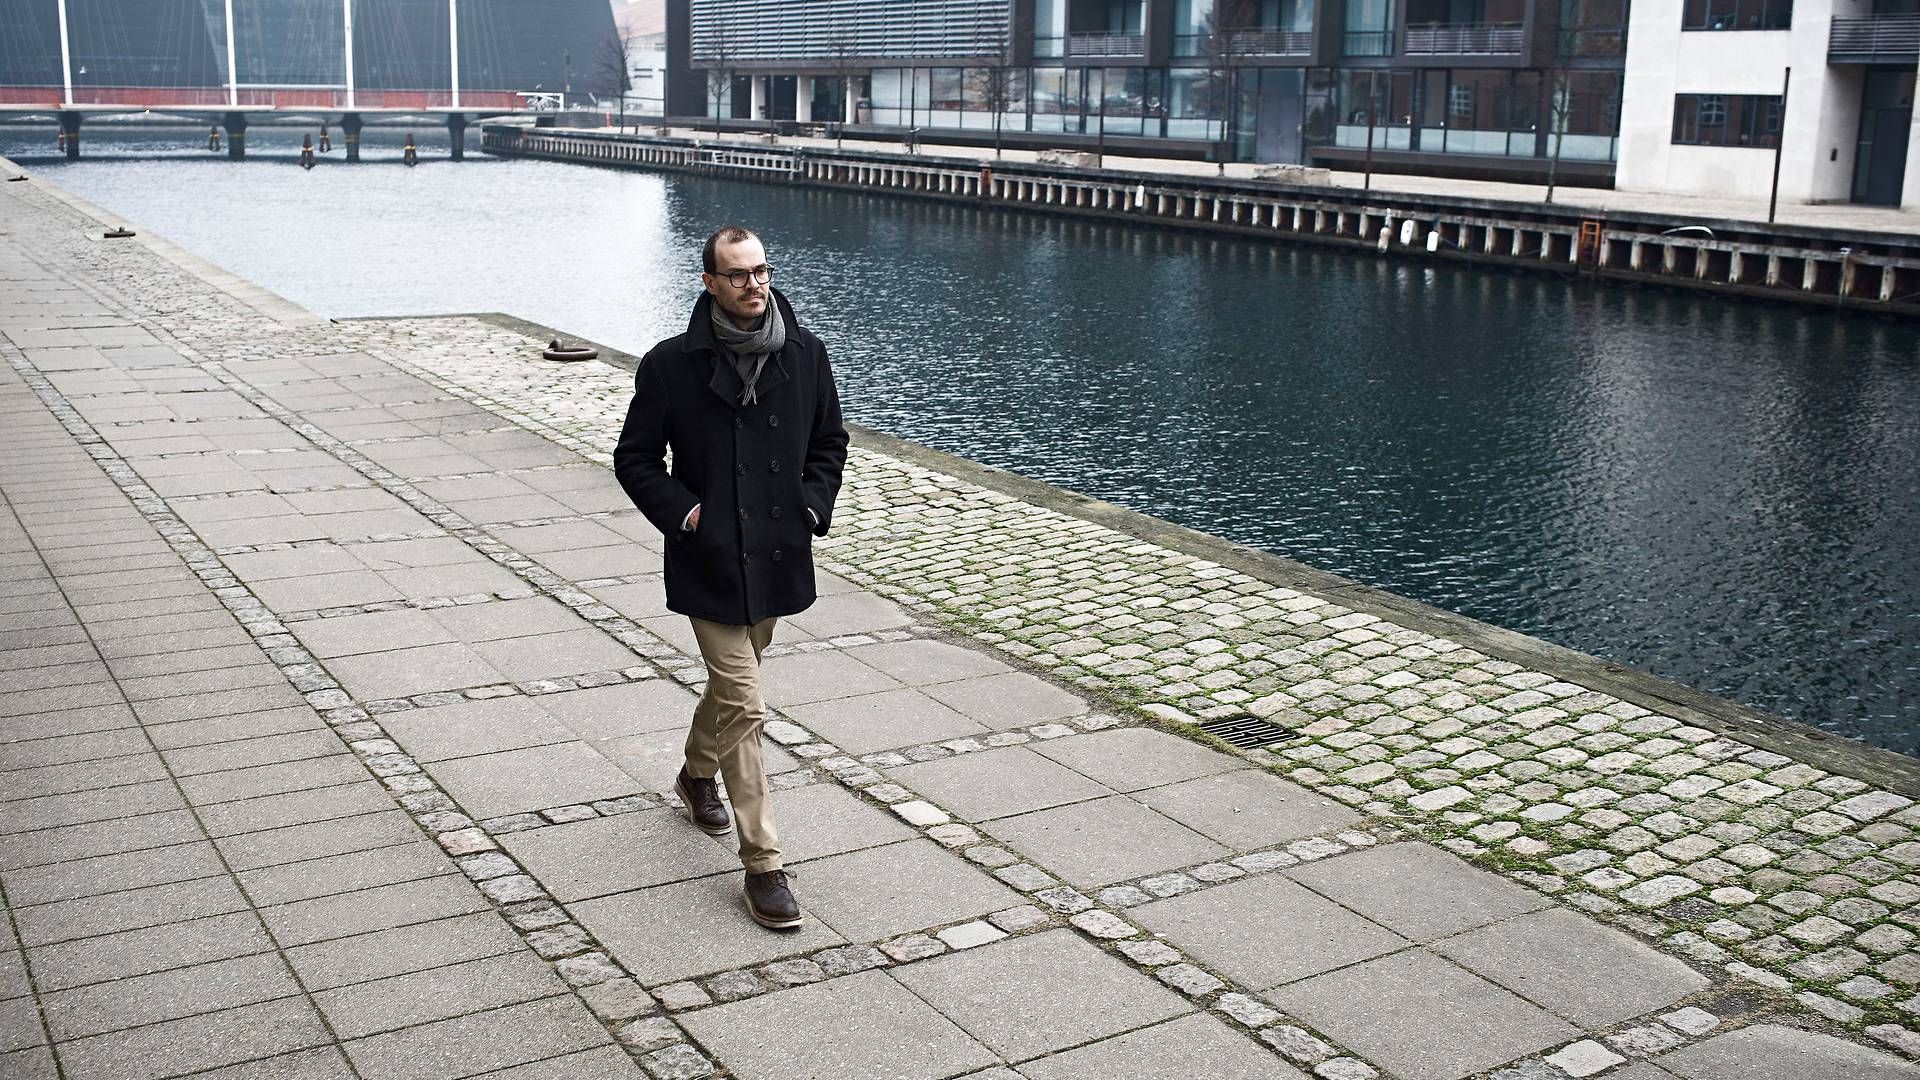 Adm. direktør og medstifter i Ernit, Søren Nielsen | Foto: Mads Joakim Rimer Rasmussen/Ritzau Scanpix